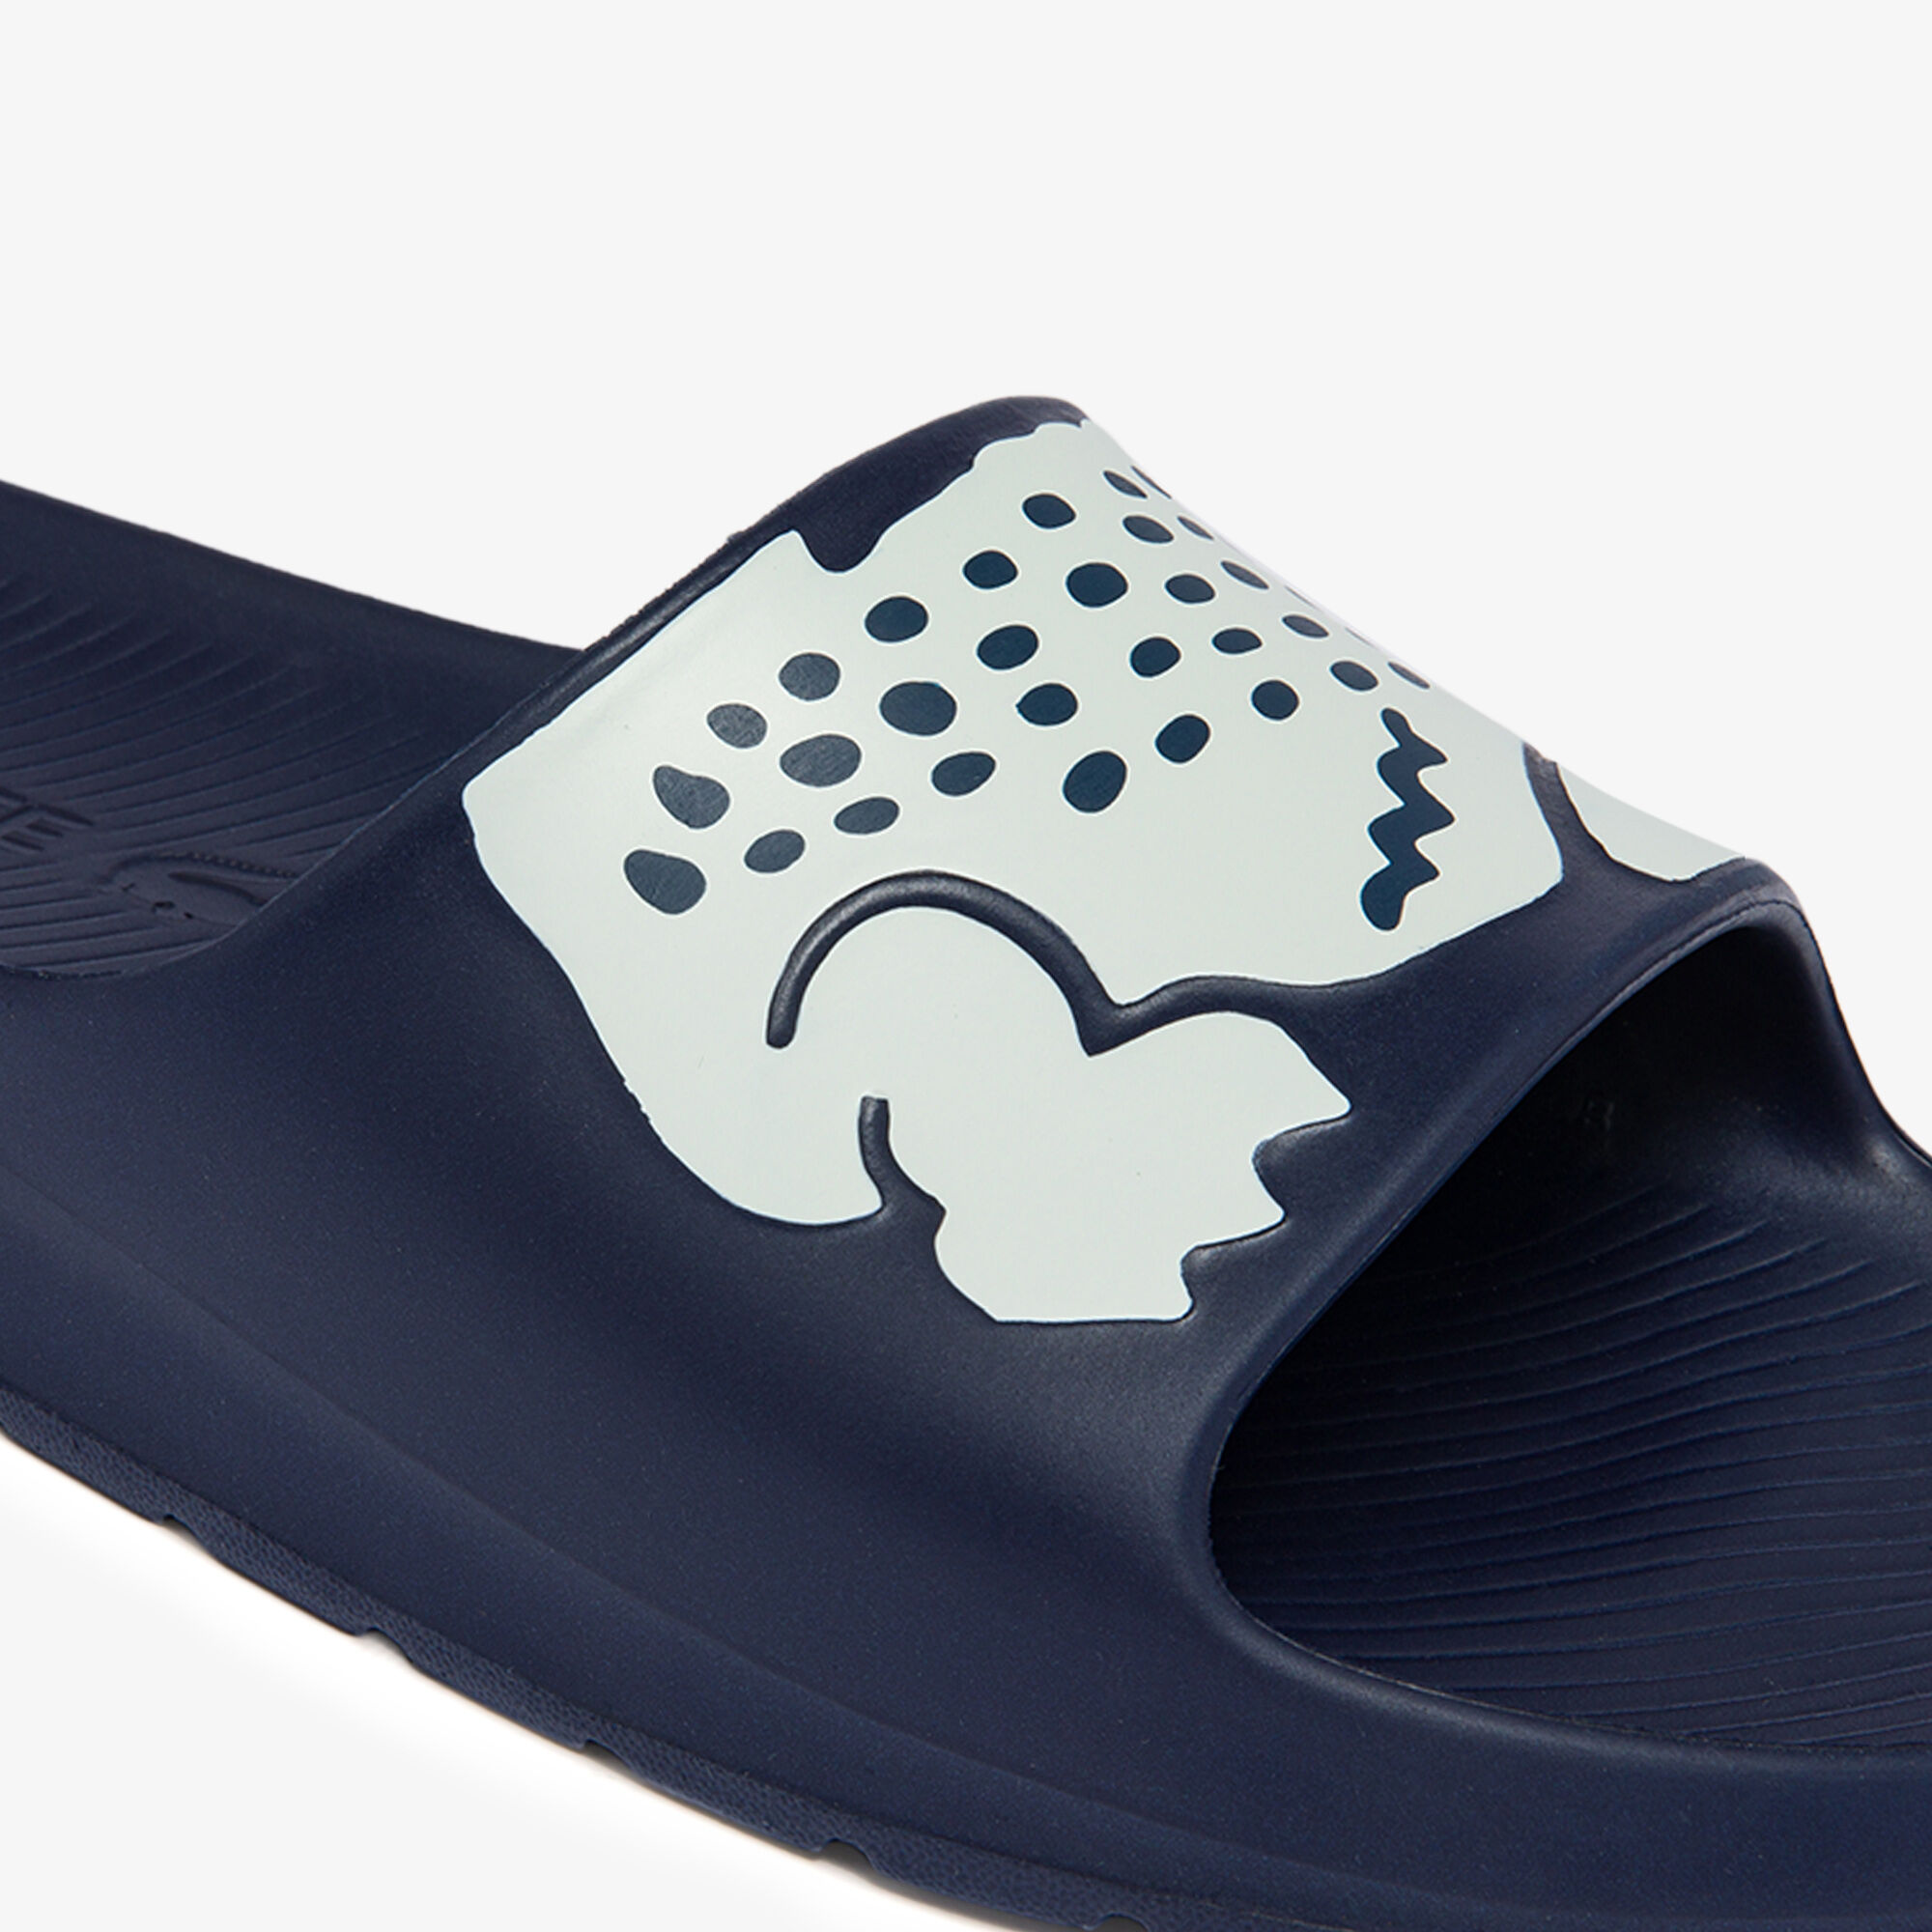 حذاء مفتوح 2.0 من خامات صناعية للرجال مجموعة Croco